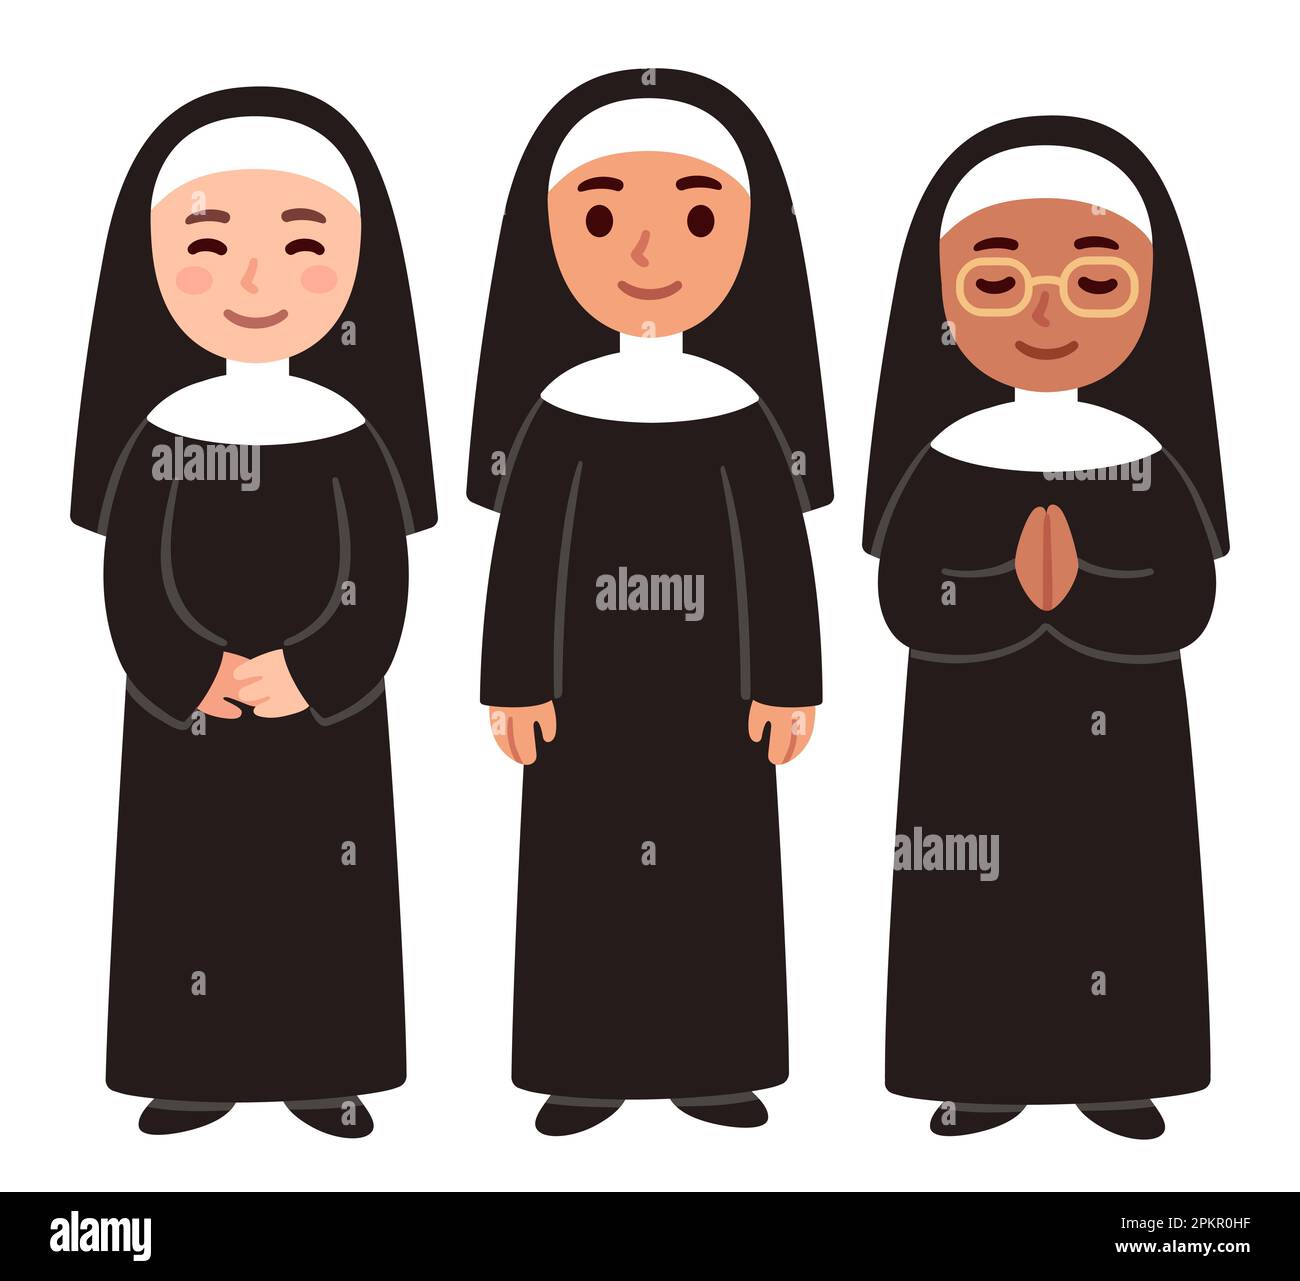 Cute cartoon Christian nuns, Catholic school teachers. Simple vector illustration. Stock Vector